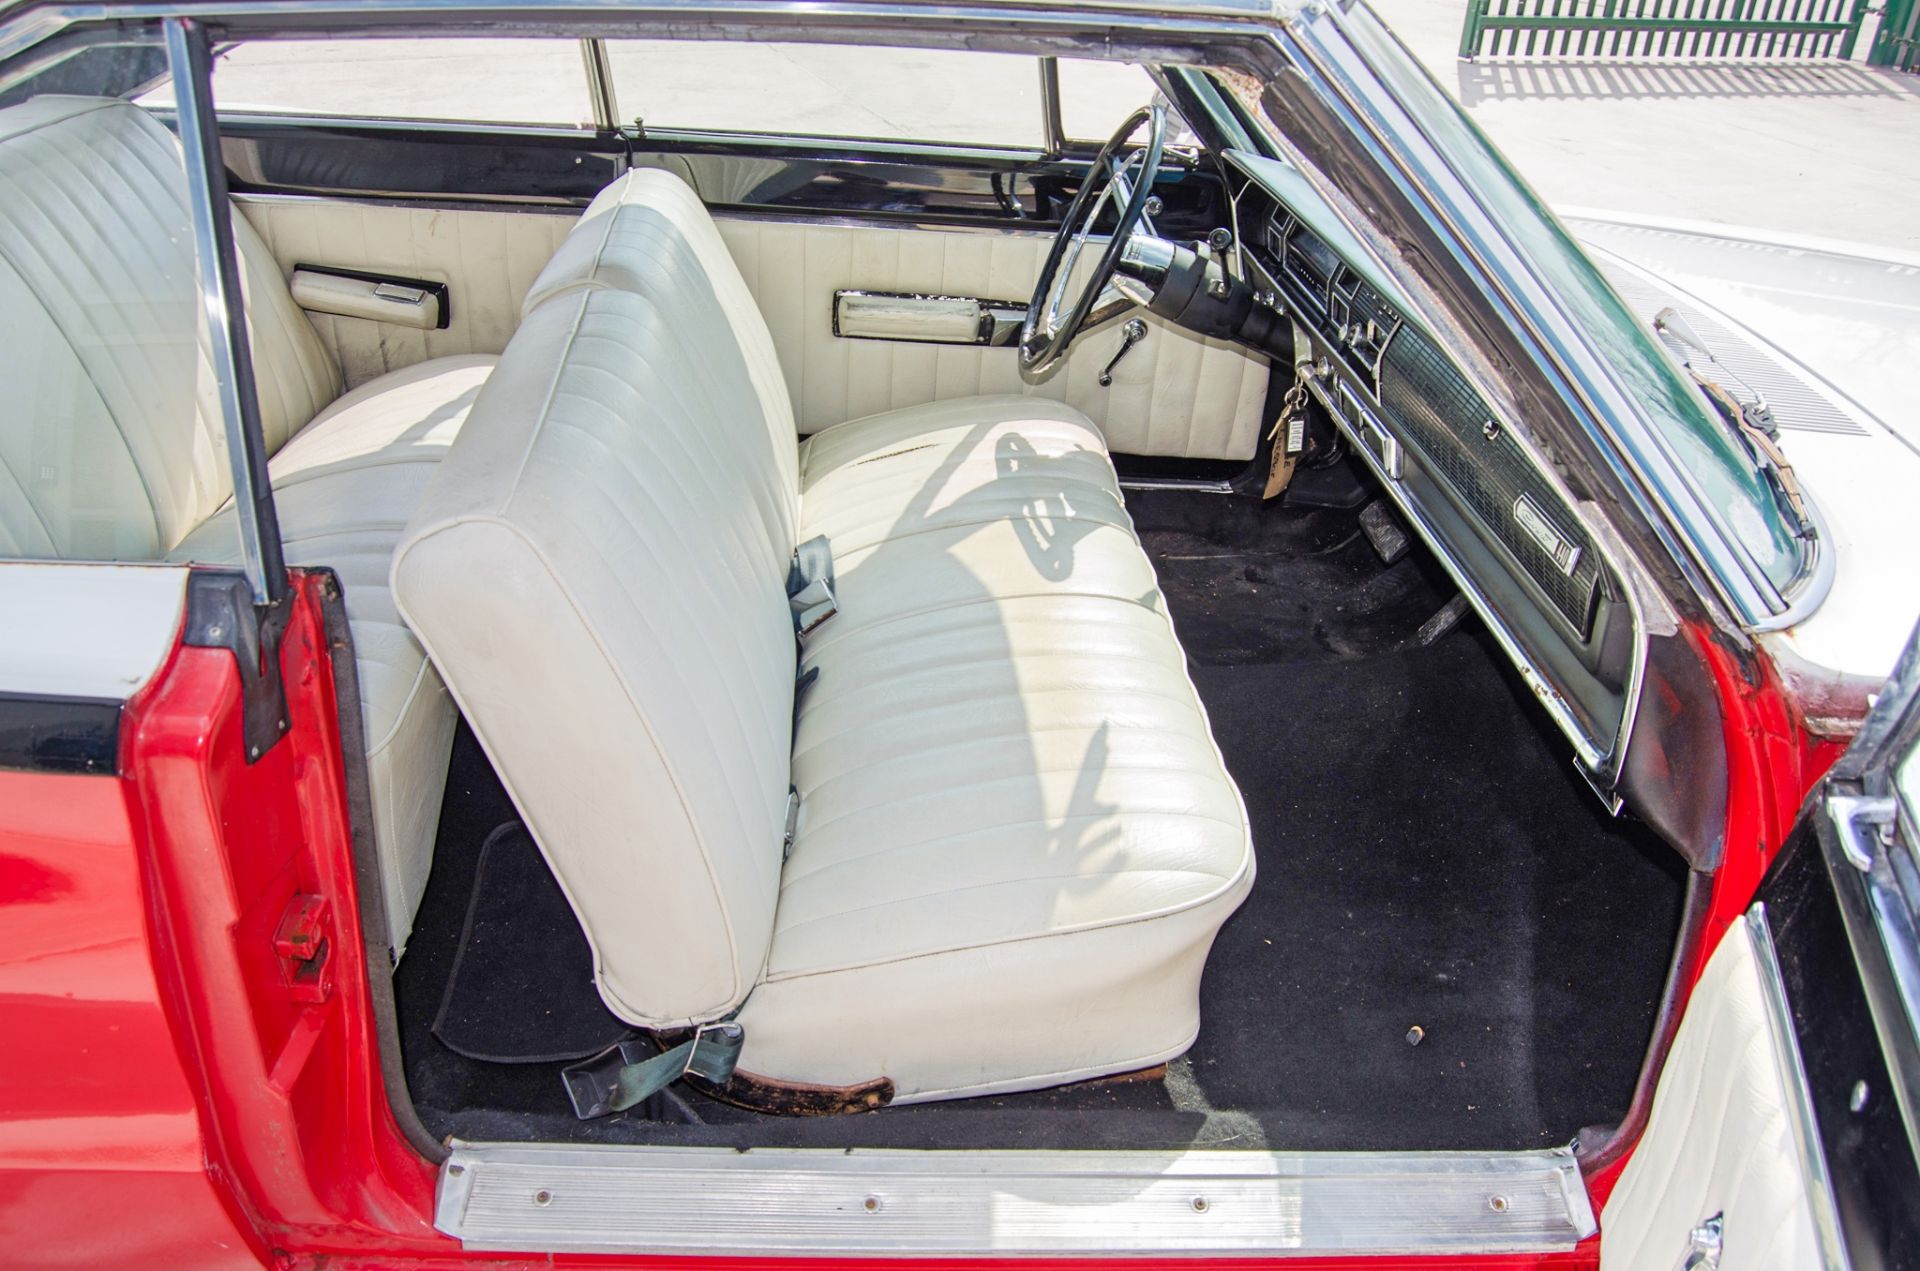 1967 Dodge Coronet 440 7.2 litre 2 door coupe - Image 38 of 54